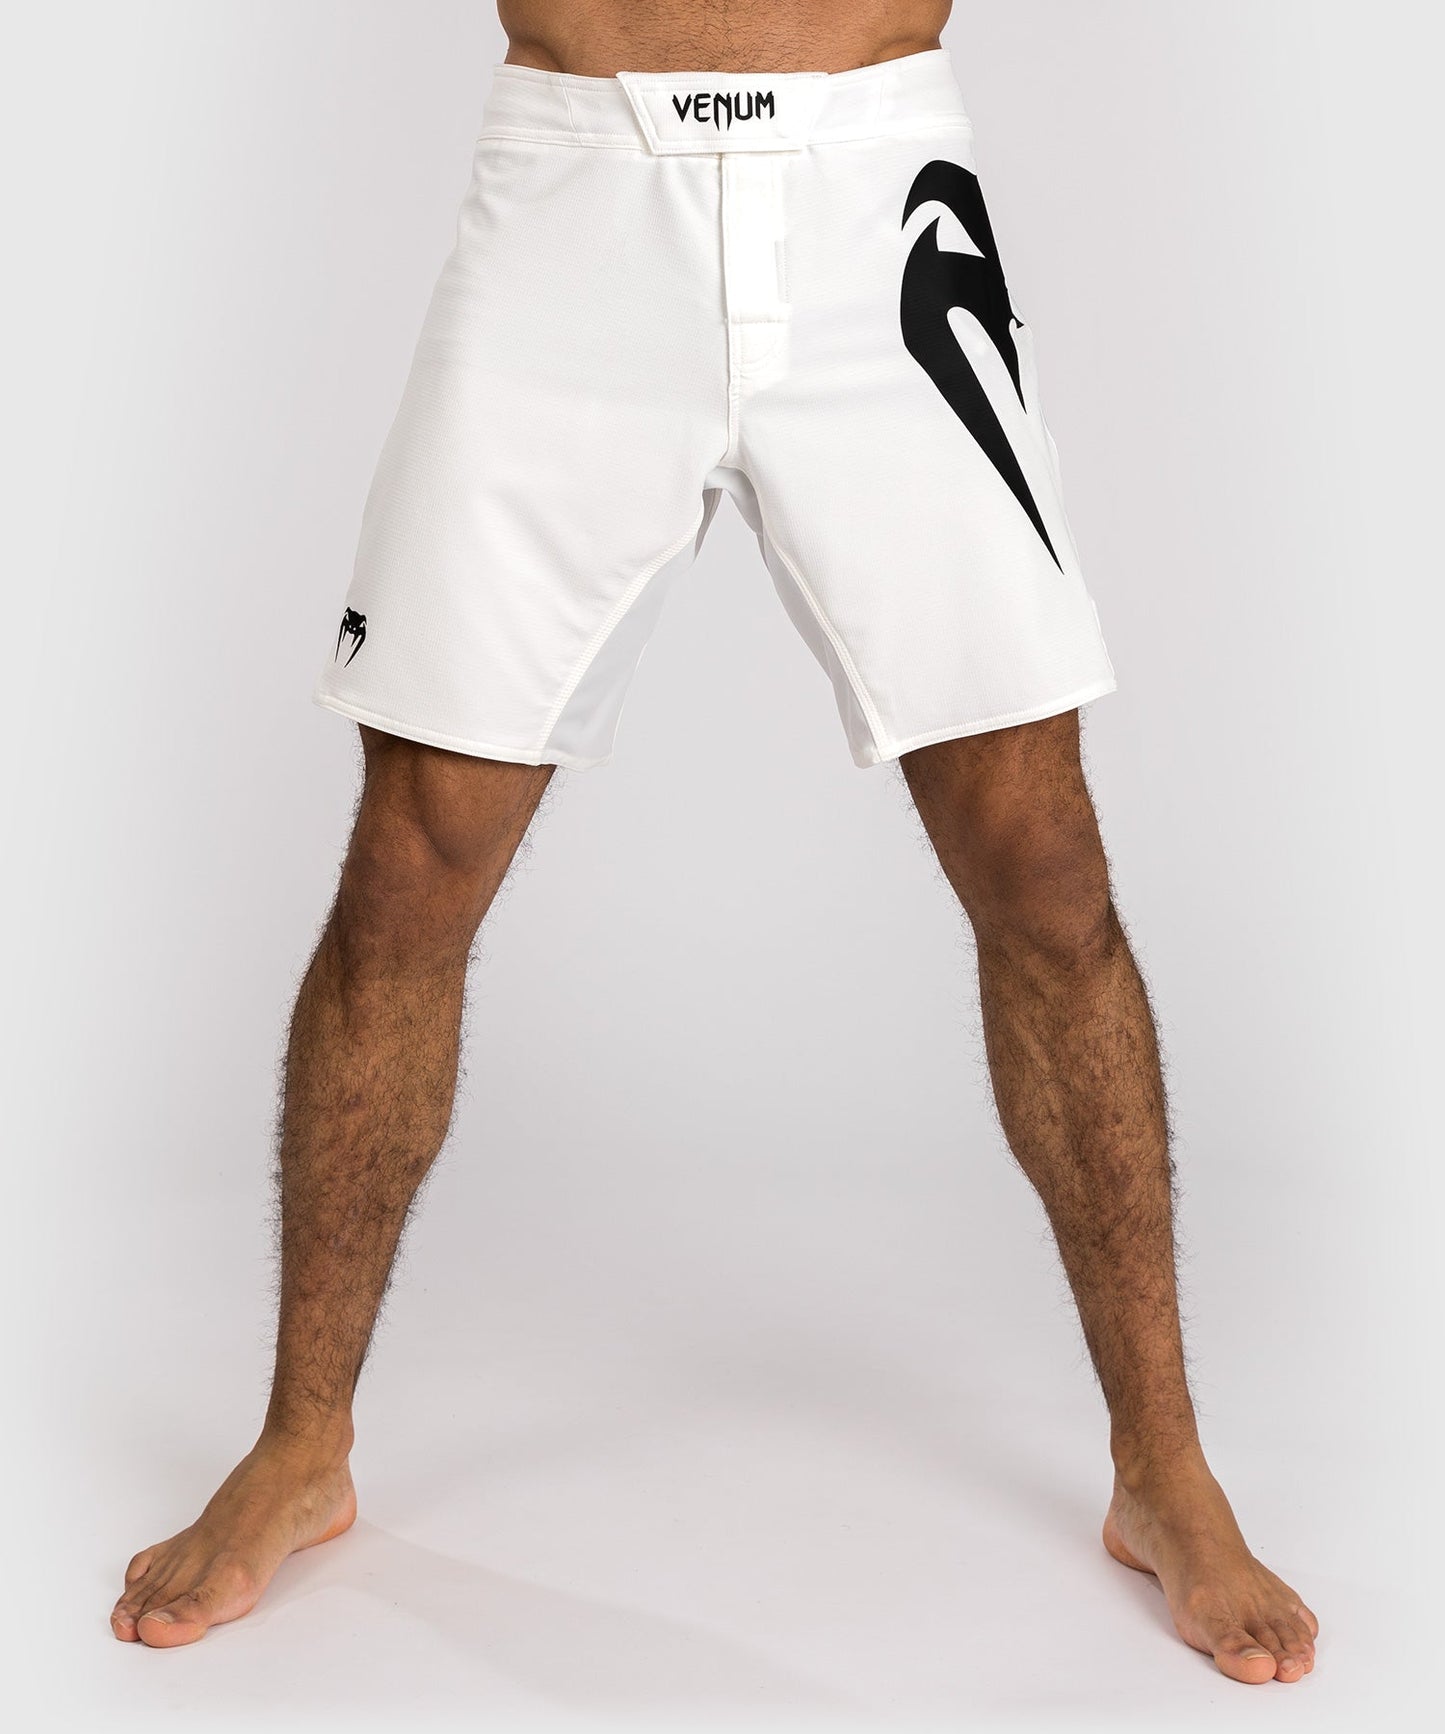 Shorts de combat Venum Light 5.0 - Blanc/Noir